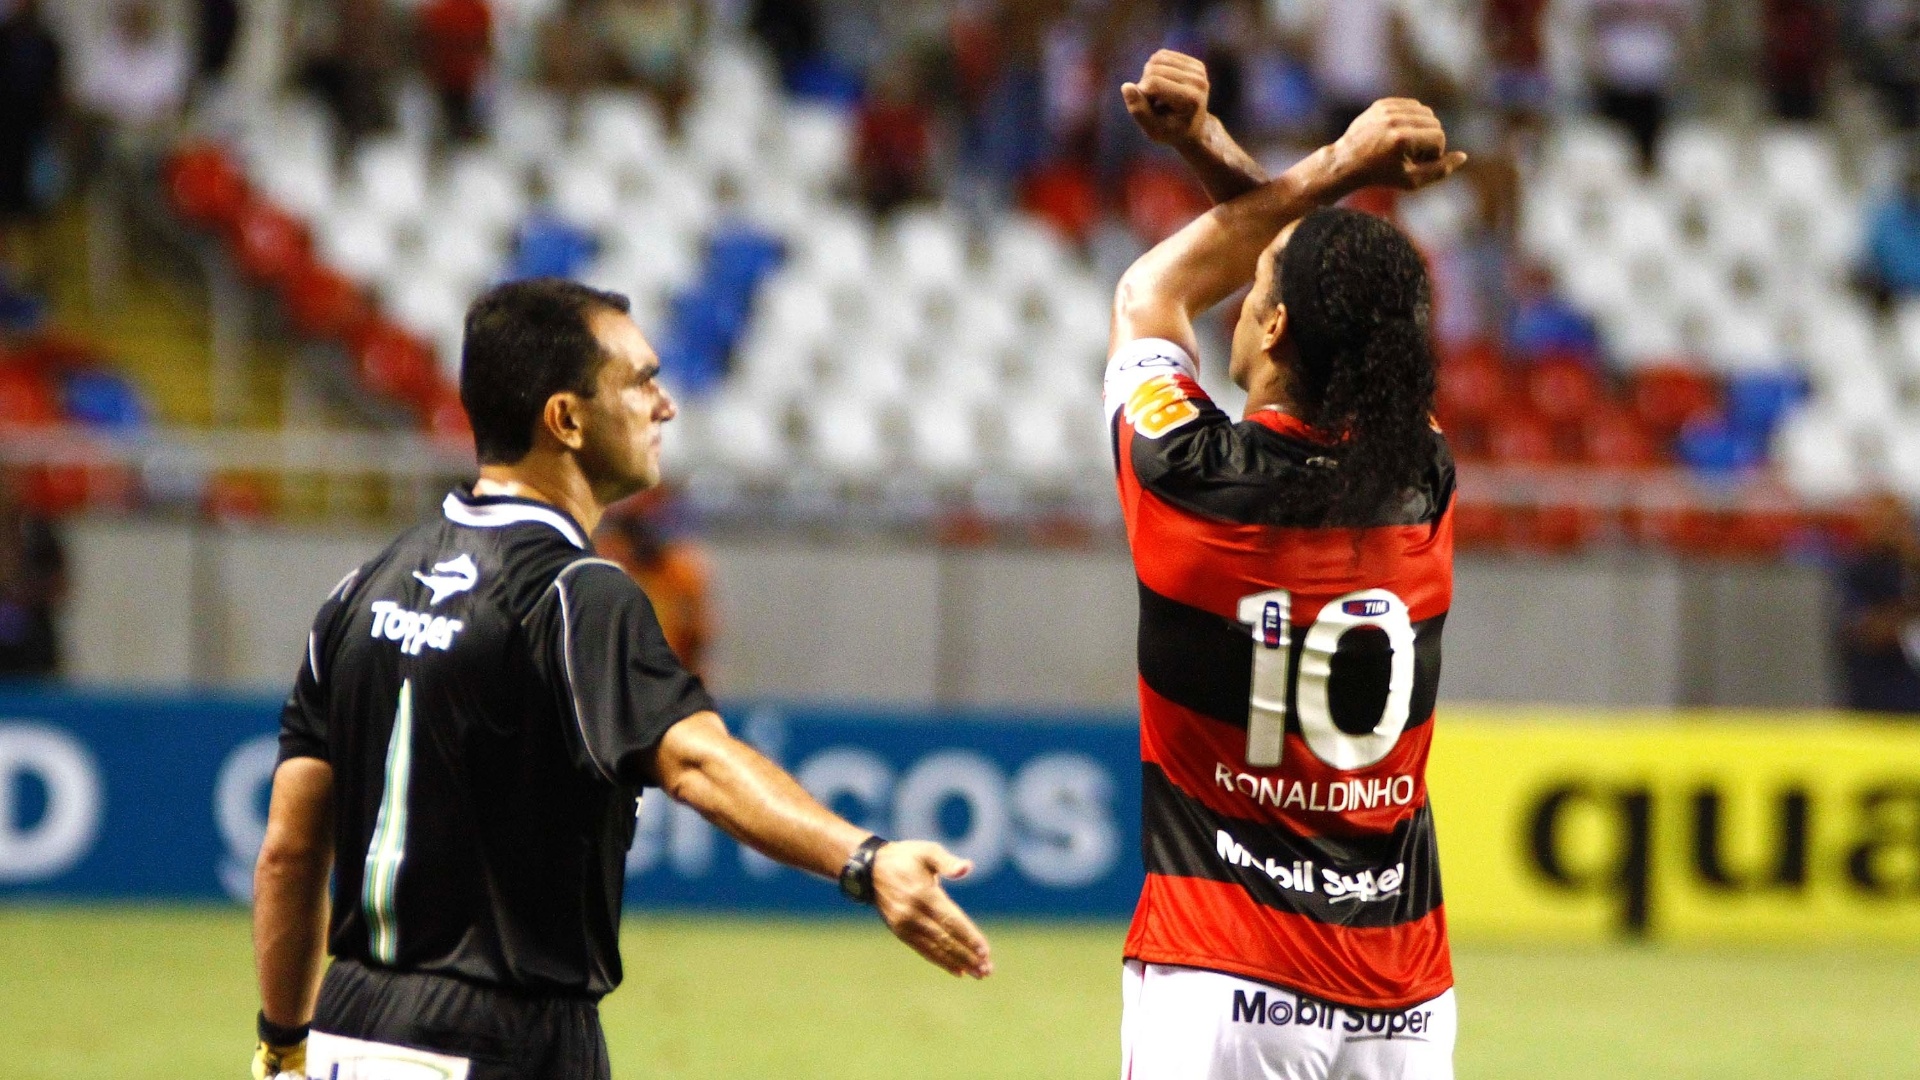 Ronaldinho Gaúcho comemora seu gol na vitória do Flamengo sobre o Vasco, em clássico disputado no estádio do Engenhão